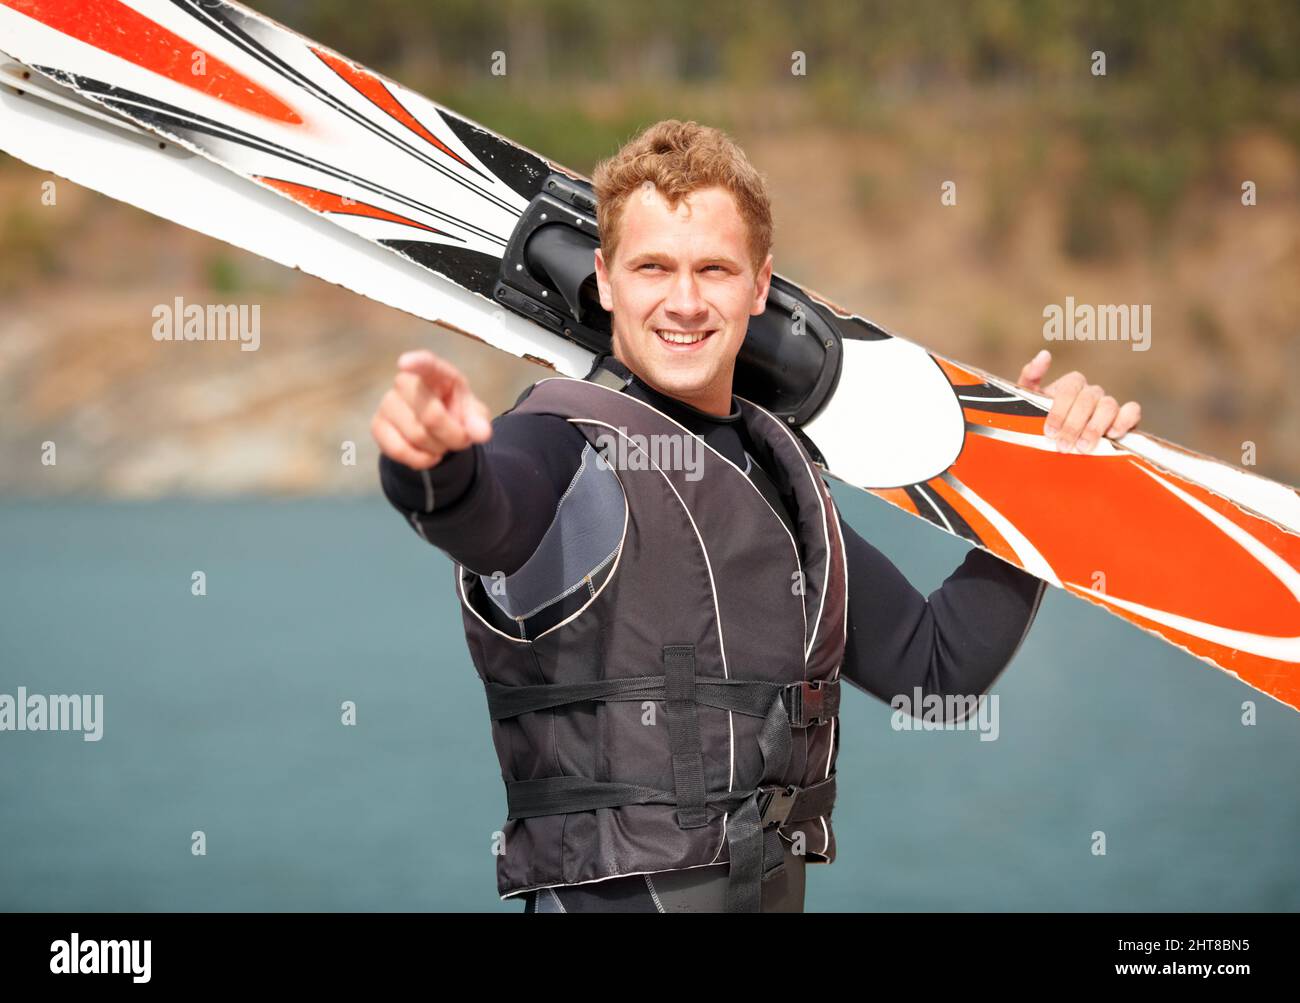 Guardate quel ragazzo lì. Sorridendo sciatore d'acqua che tiene i suoi sci lungo il lago e punta. Foto Stock